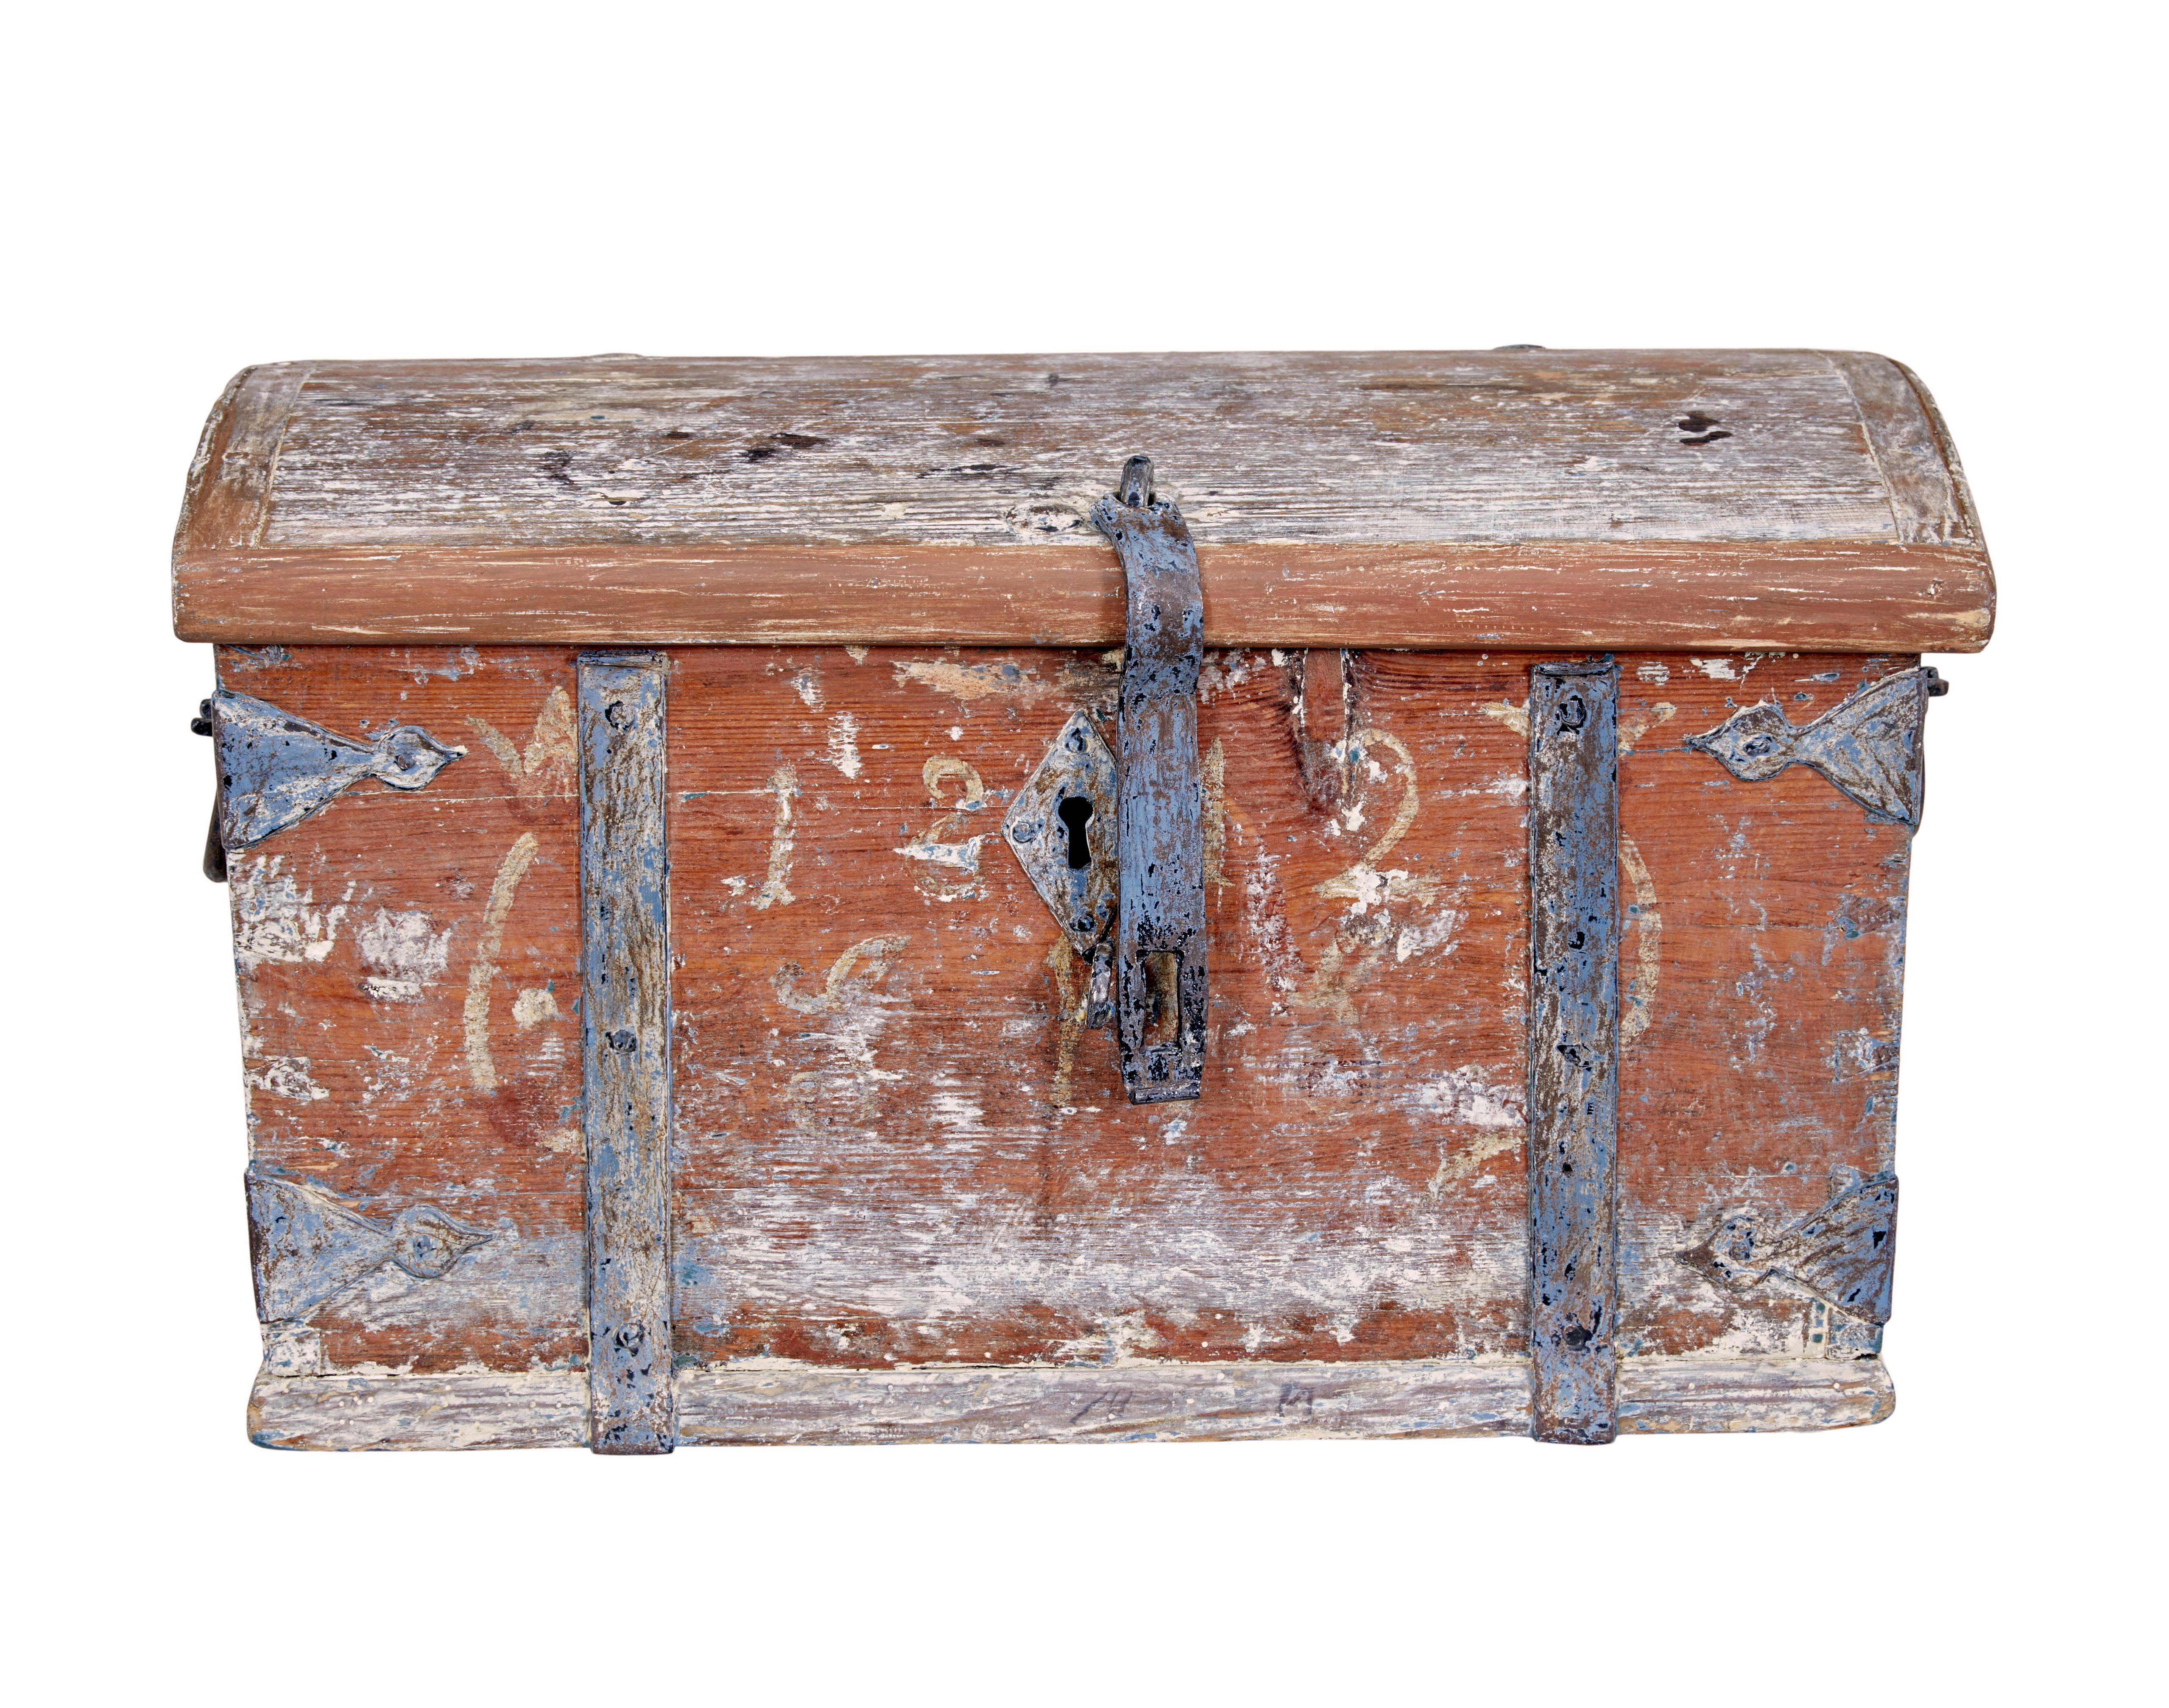 Petit coffre fort en pin peint suédois du milieu du 19e siècle, vers 1842.

Magnifique petit coffre fort scandinave, présenté avec une peinture grattée pour révéler l'original.  La date de 1842 est à peine visible. La ferronnerie est légèrement